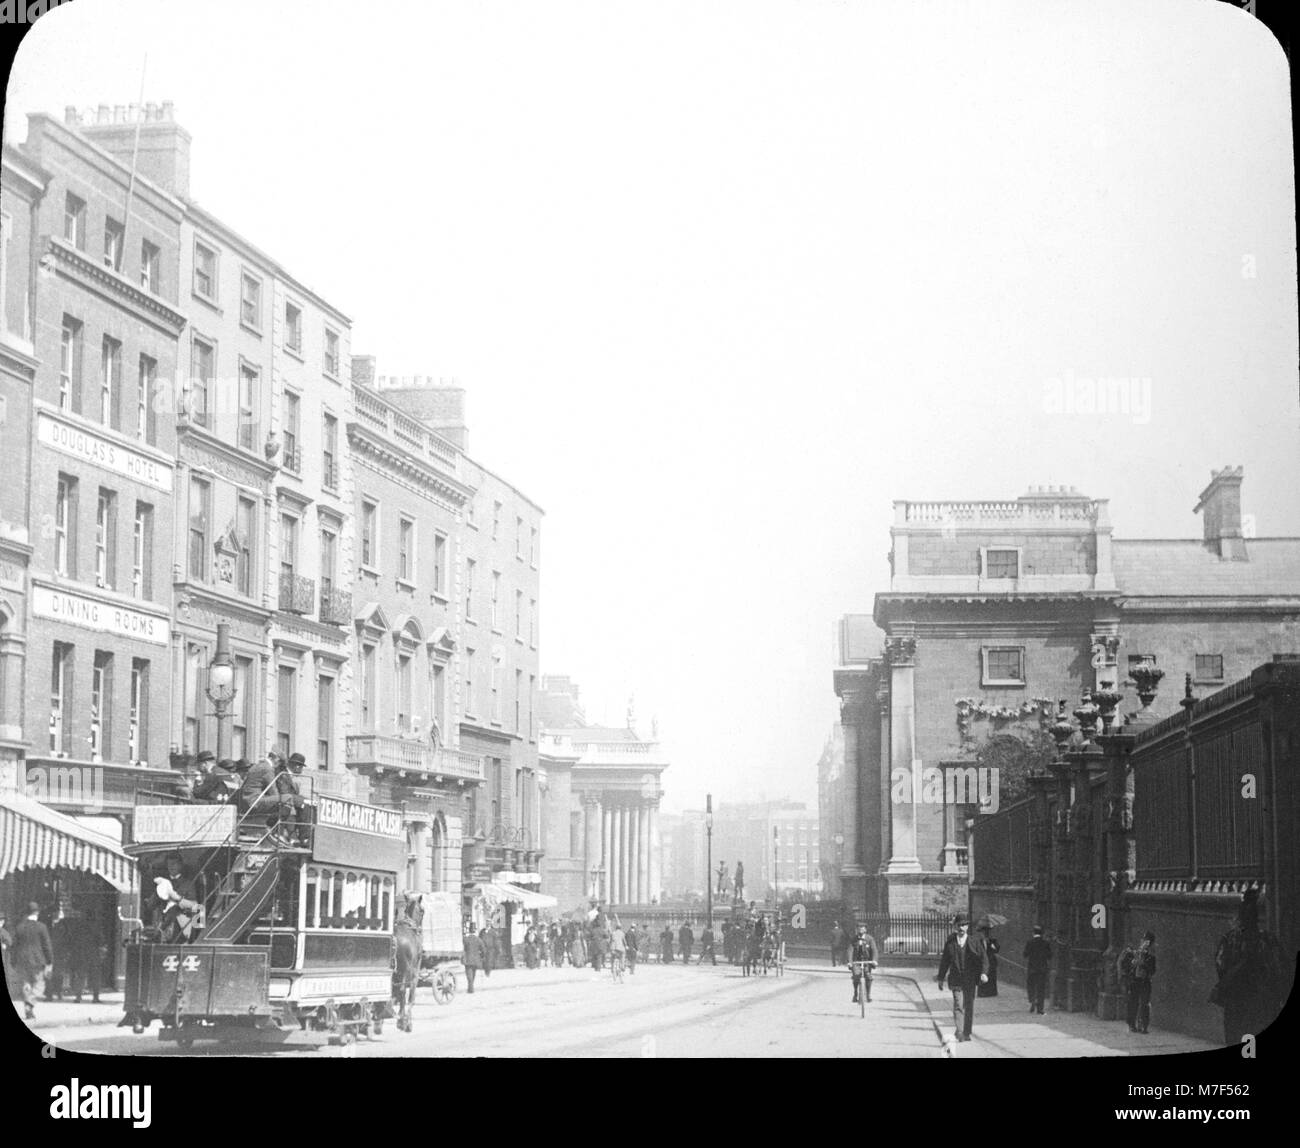 Vue de dessus de Grafton Street à Dublin à l'époque victorienne. L'hôtel Douglas et les salles à manger sont visibles sur la gauche, et le nombre 44 tramway tiré par des chevaux montre des publicités pour râper Zebra Polish. Banque D'Images